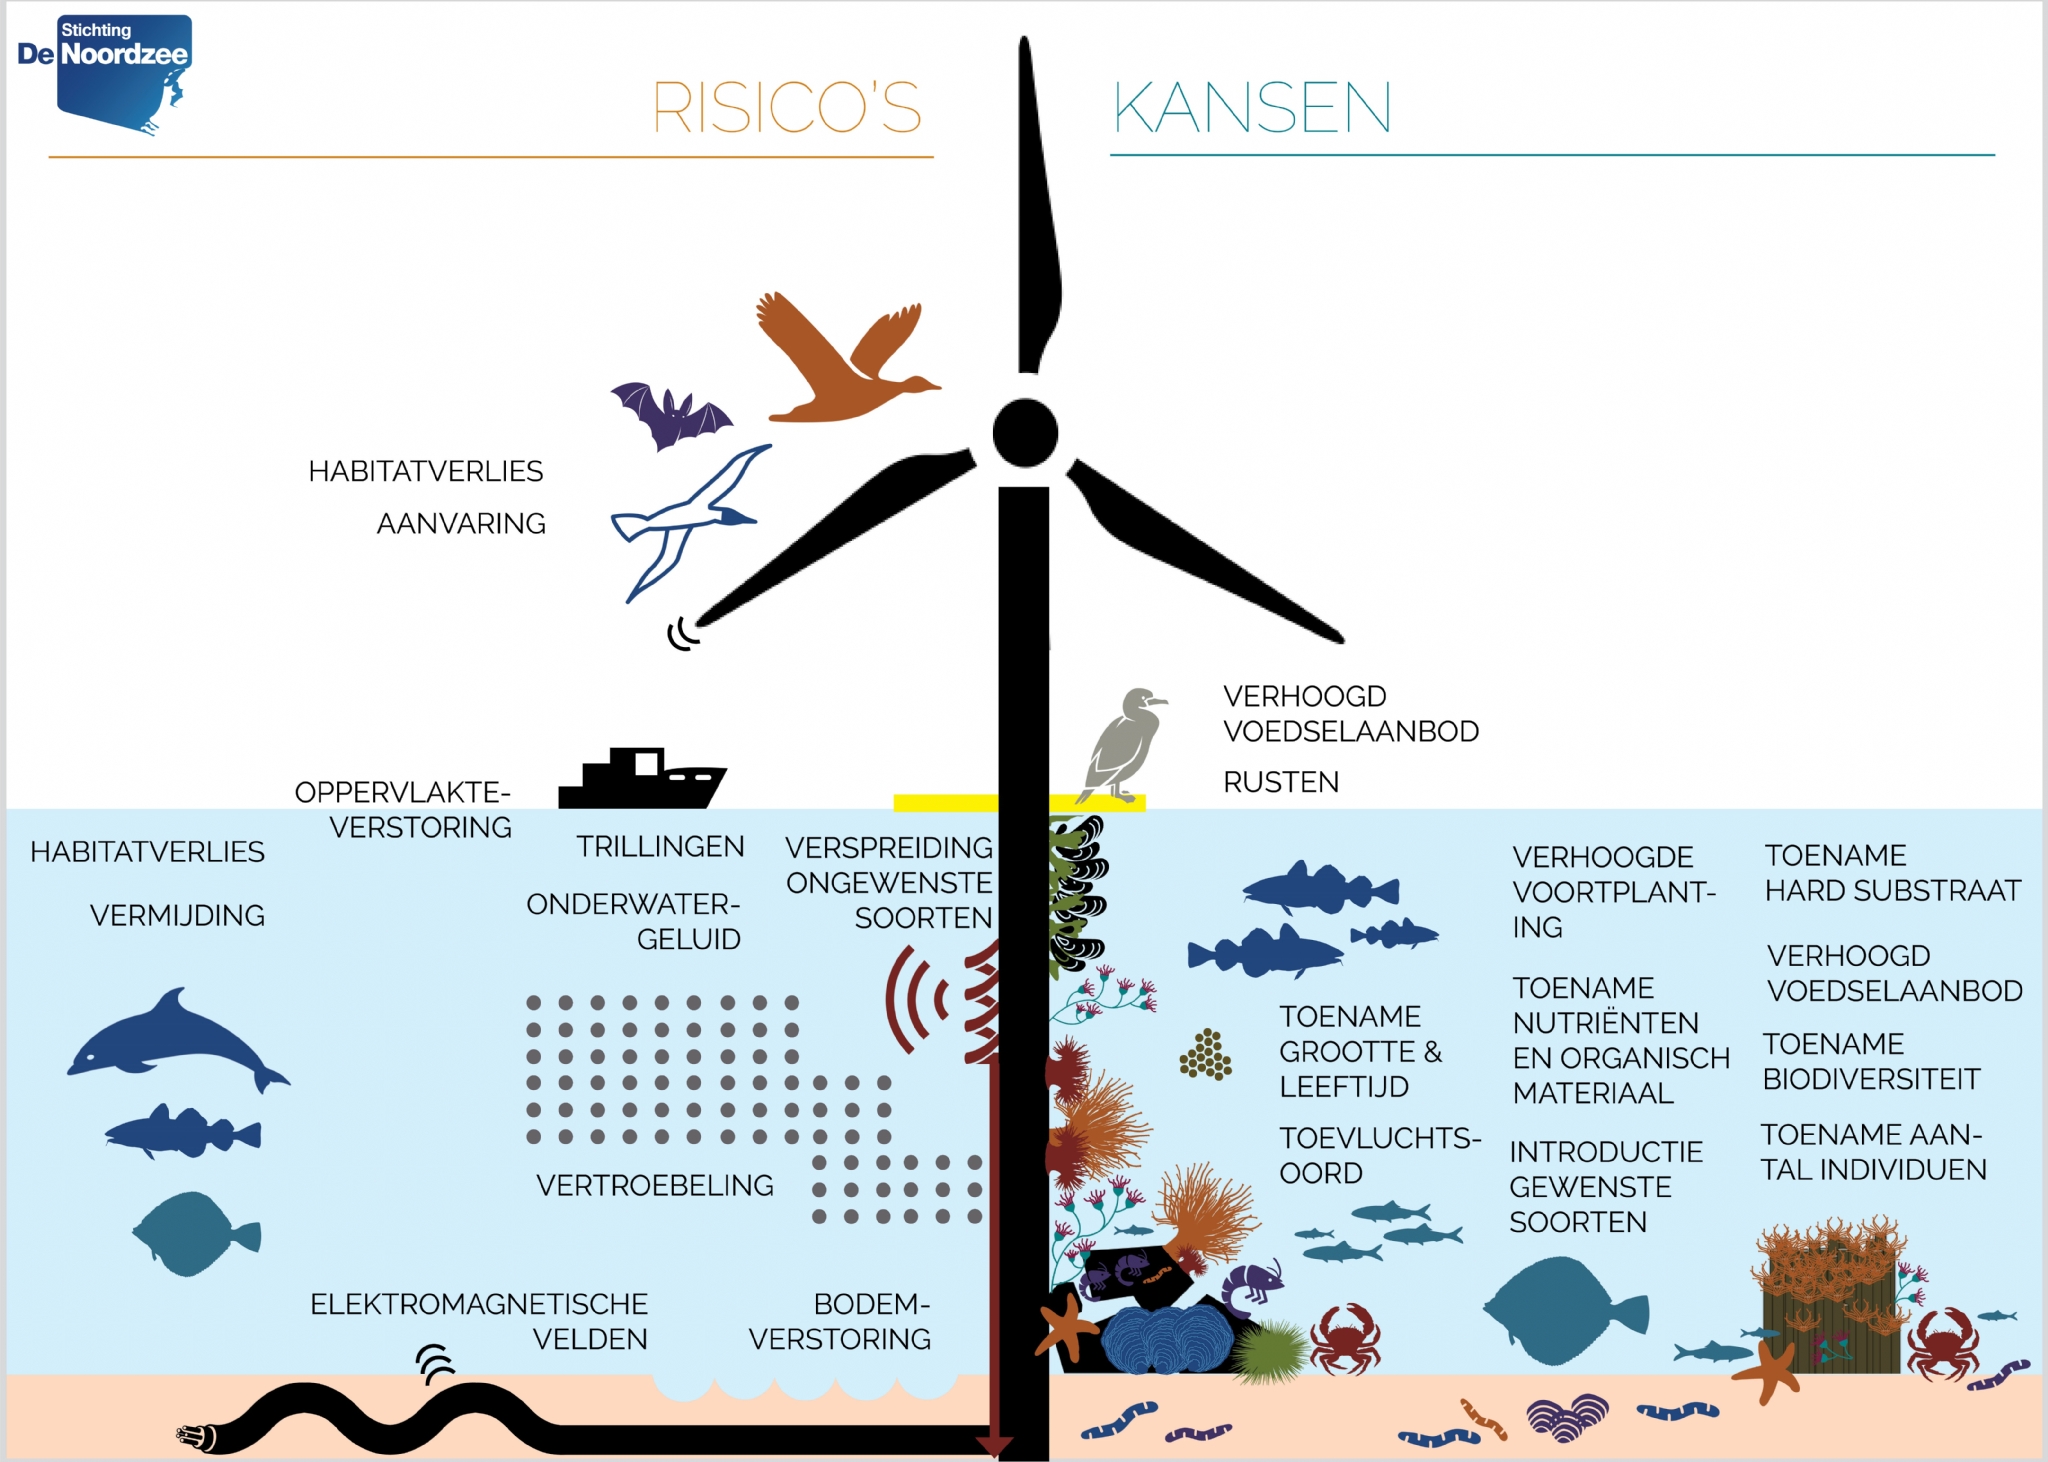 Ingrijpende veranderingen op de Noordzee door de groei van windparken vragen om meer onderzoek